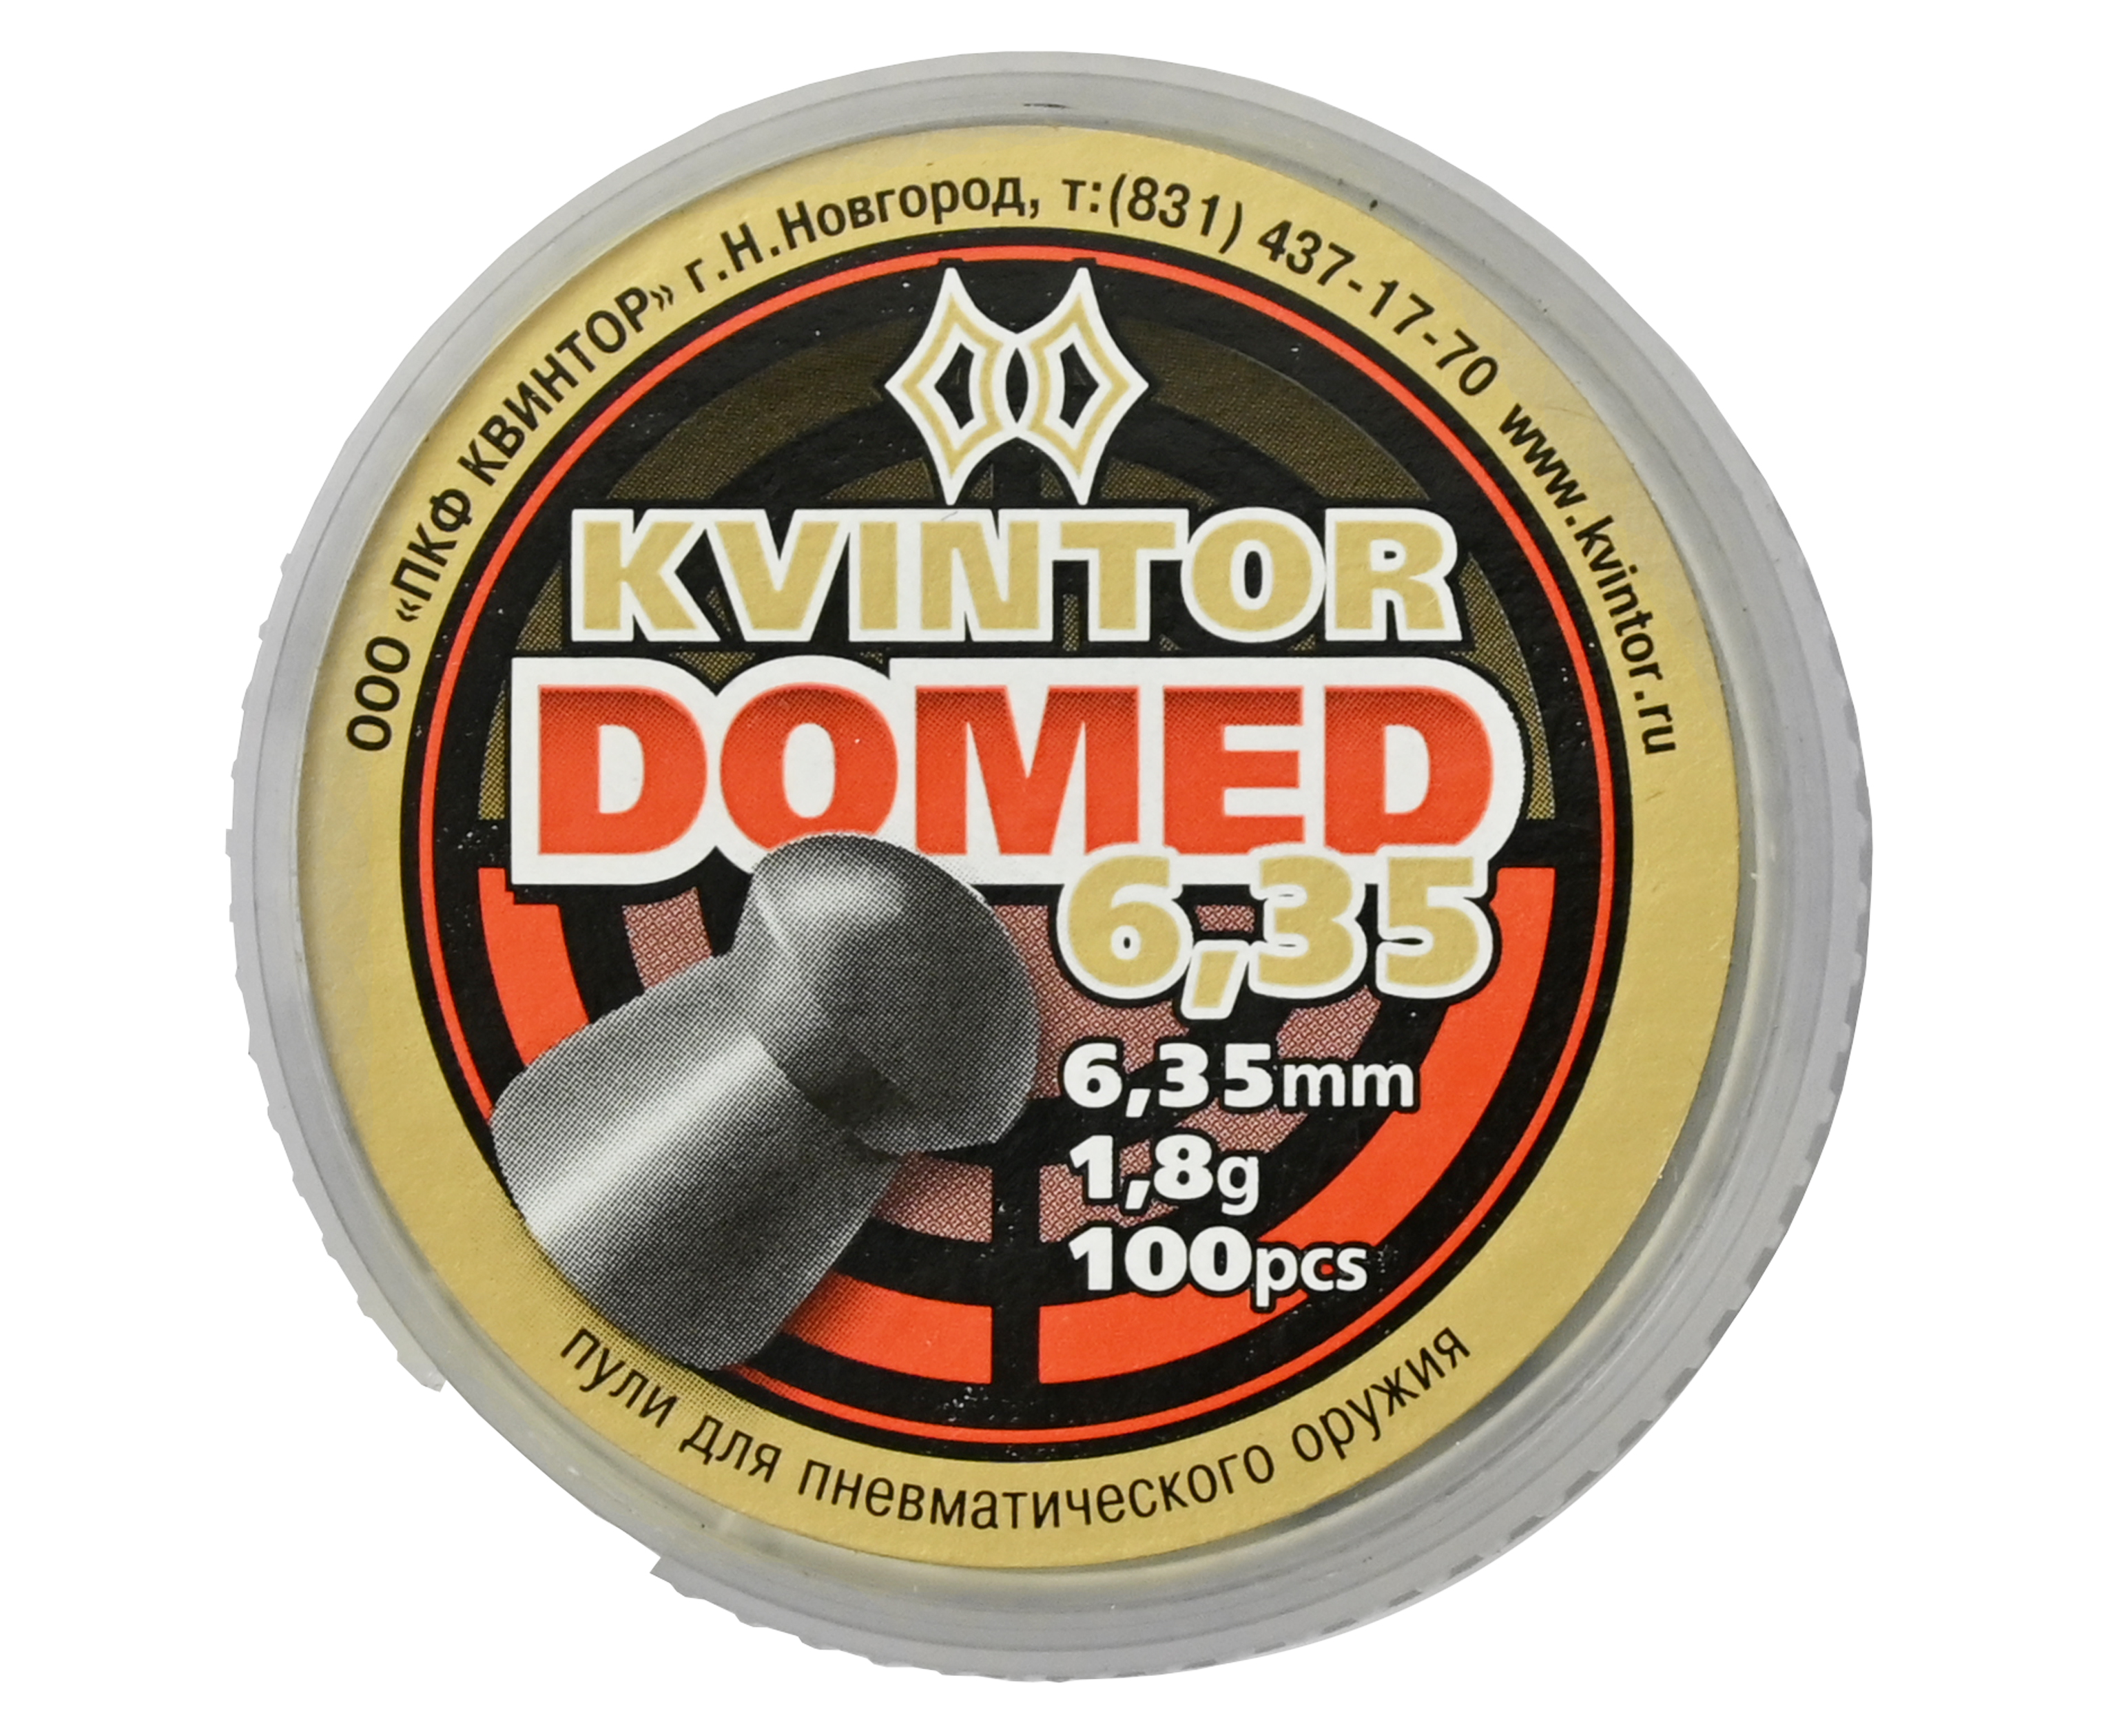 Пули пневматические Kvintor Domed 6,35 mm, 1,8 гр. (100 шт)